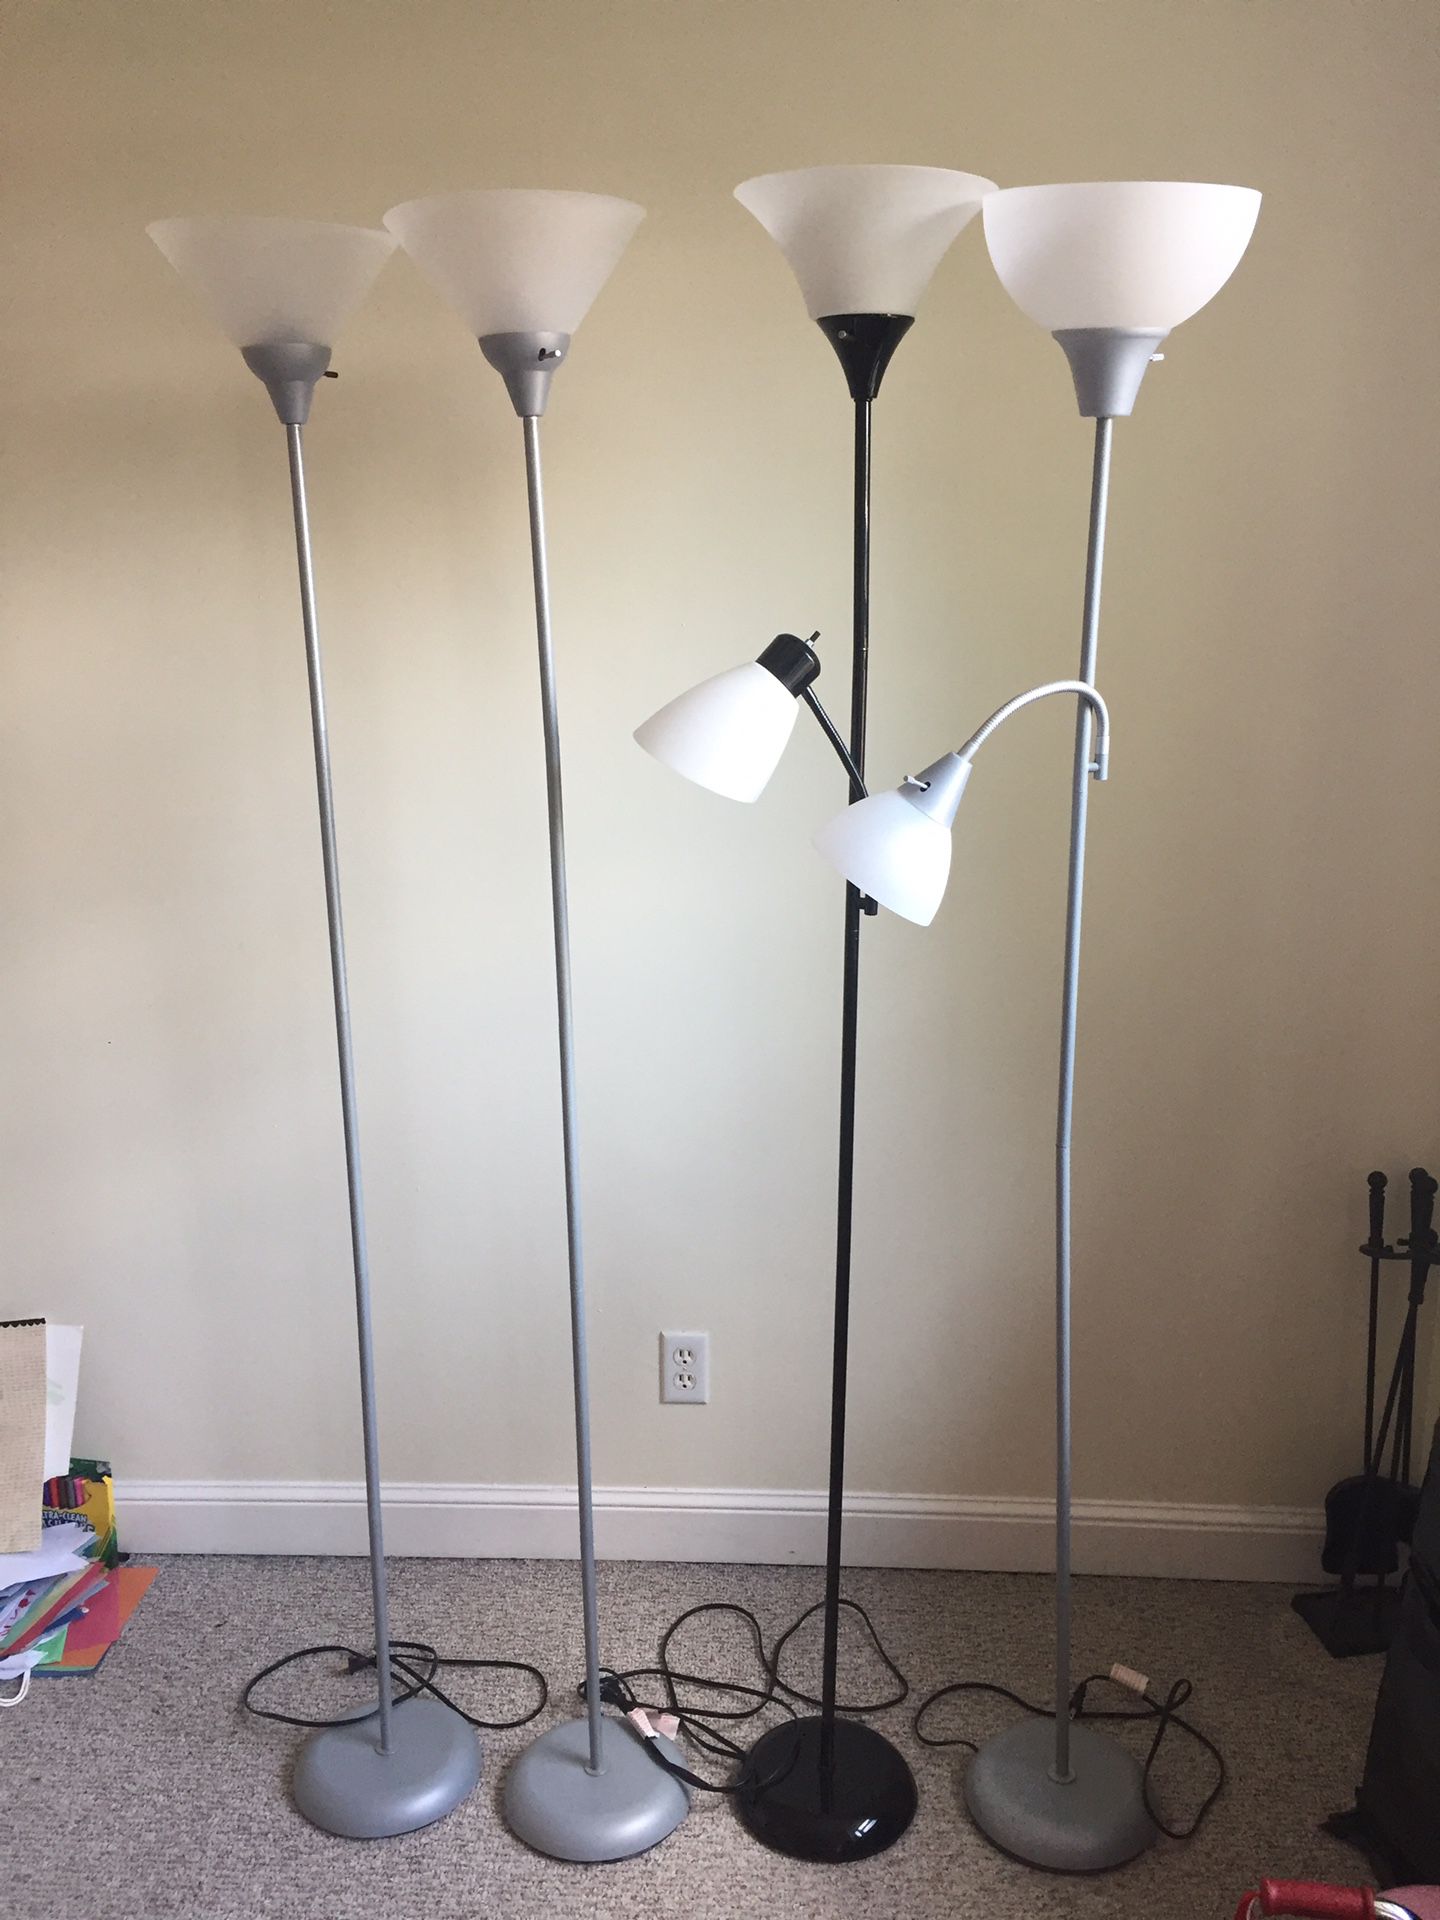 4 floor lamps